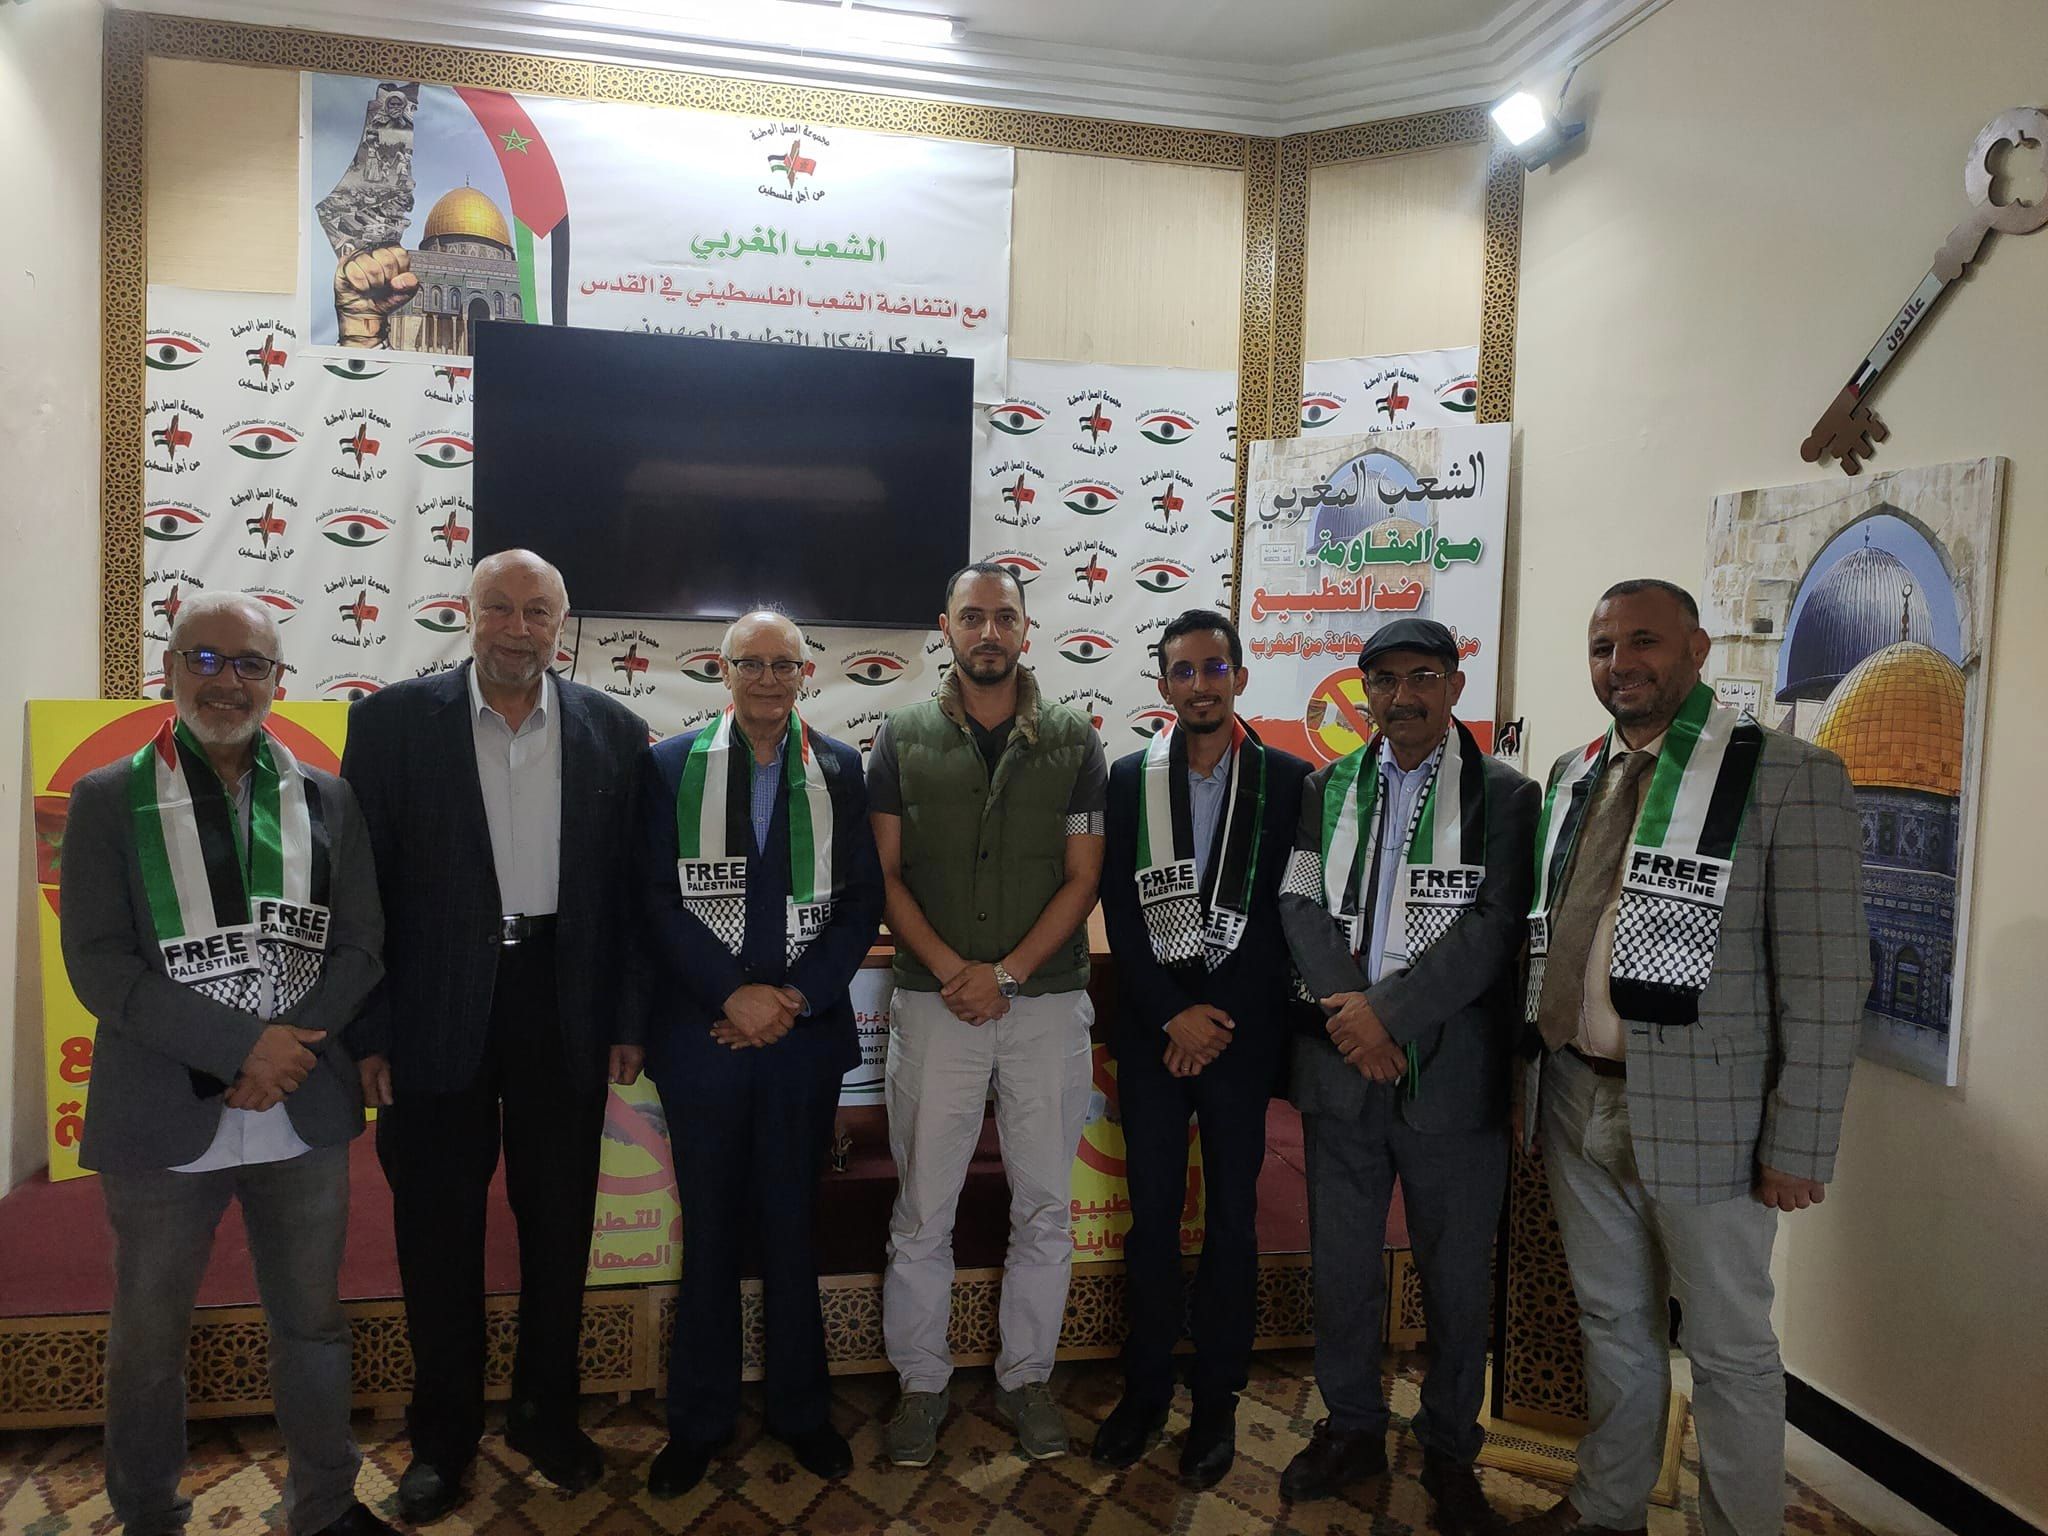 وفد من المؤتمر الشعبي يزور مجموعة العمل من أجل فلسطين في المغرب